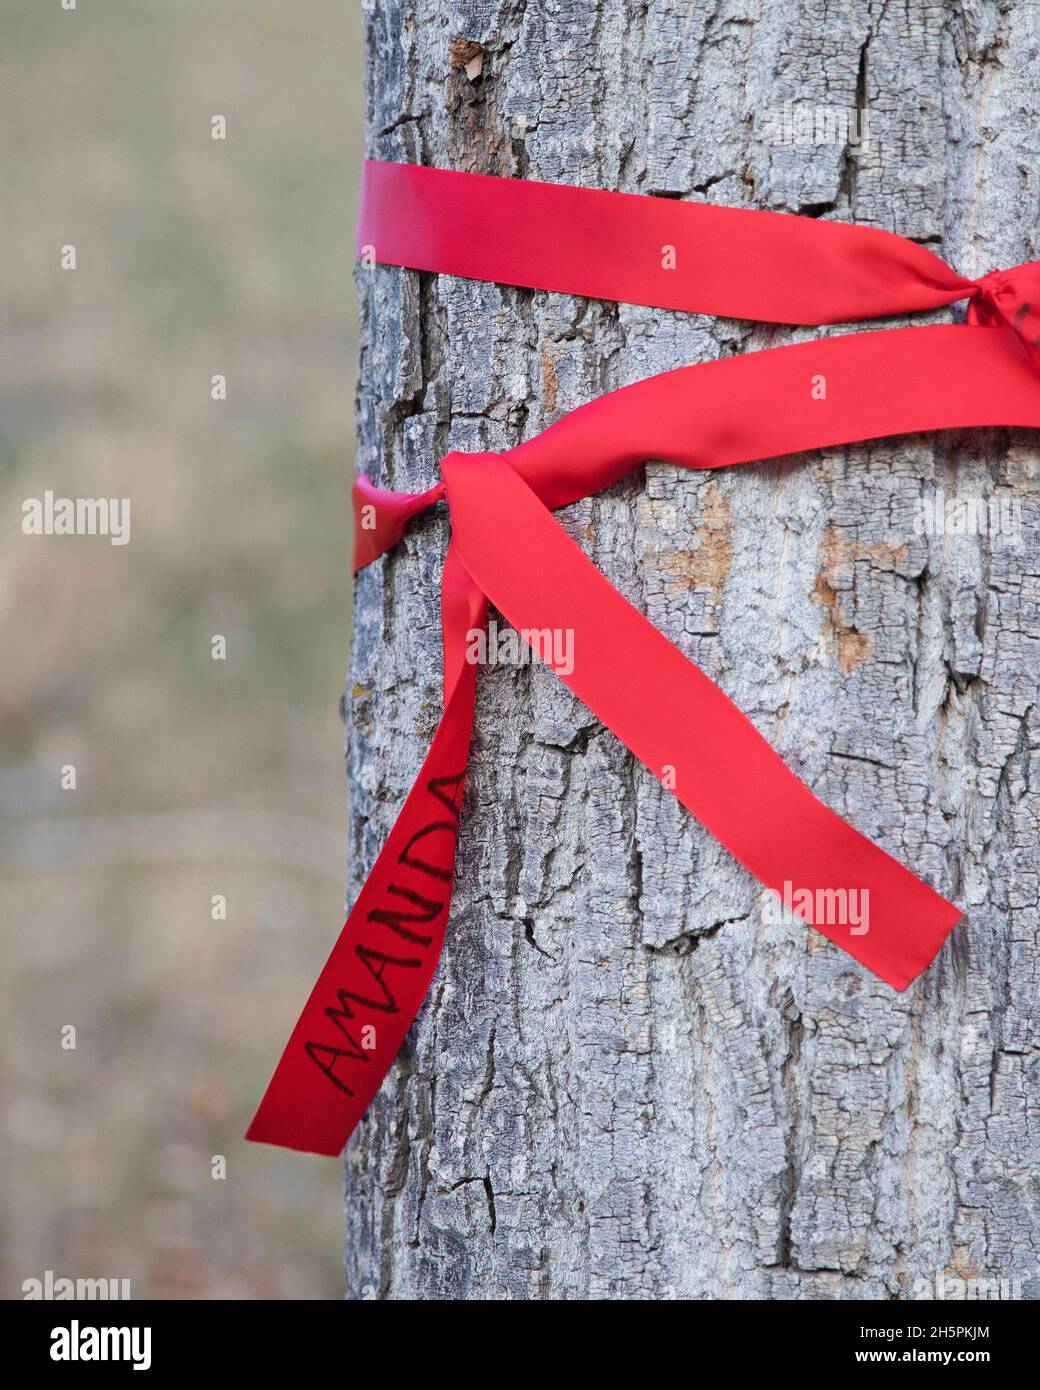 Rotes Band, das zum Gedenktag an einen Baum gebunden ist, als Denkmal für eine vermisste oder ermordete indigene Frau. Stockfoto